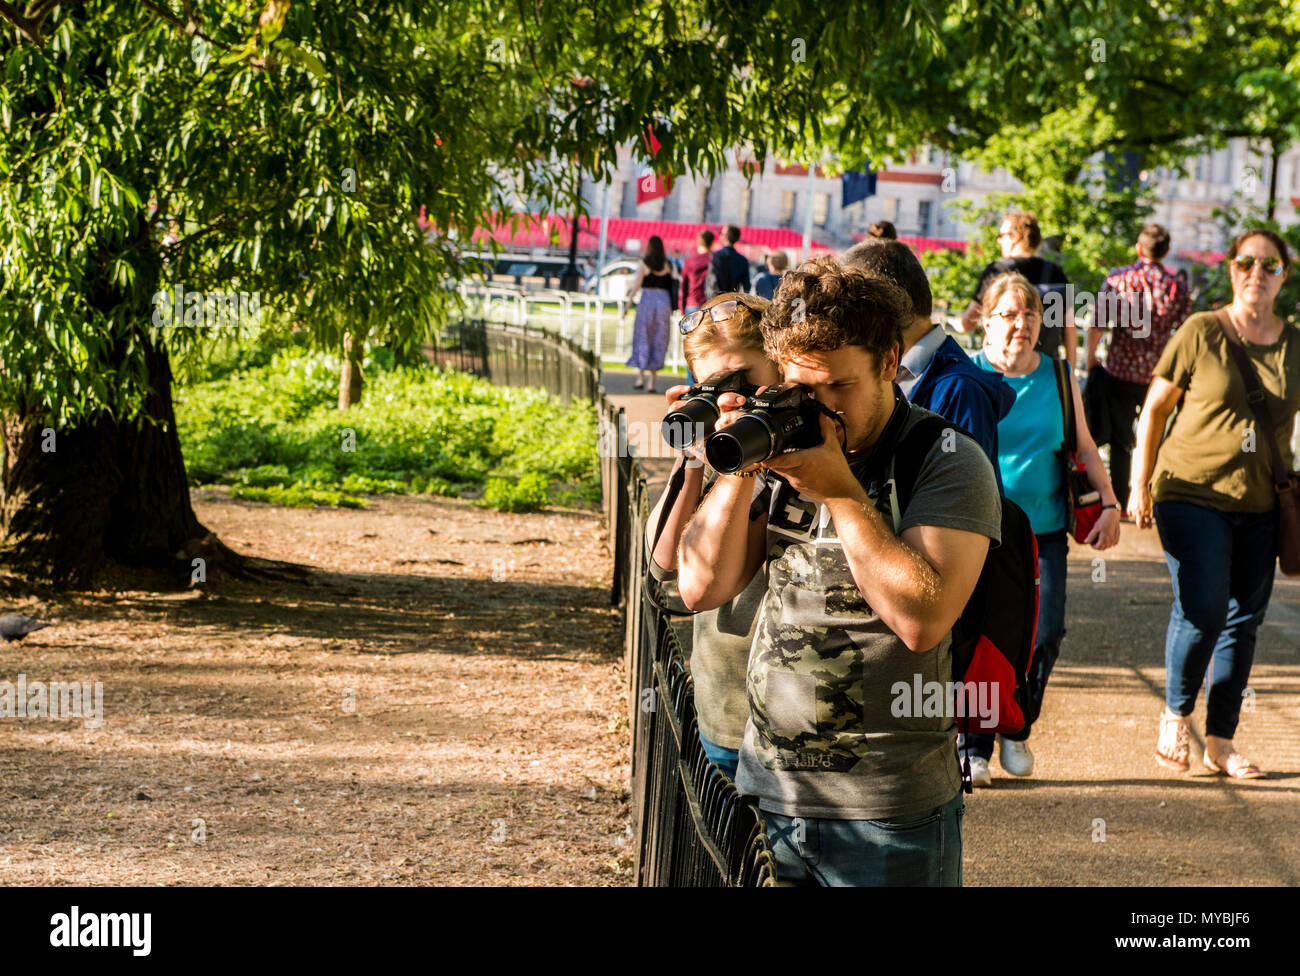 Zwei Menschen fotografieren betrifft Aus schuss, mit langen Objektiven in die gleiche Richtung wiesen, St James's Park, London, England, Großbritannien Stockfoto